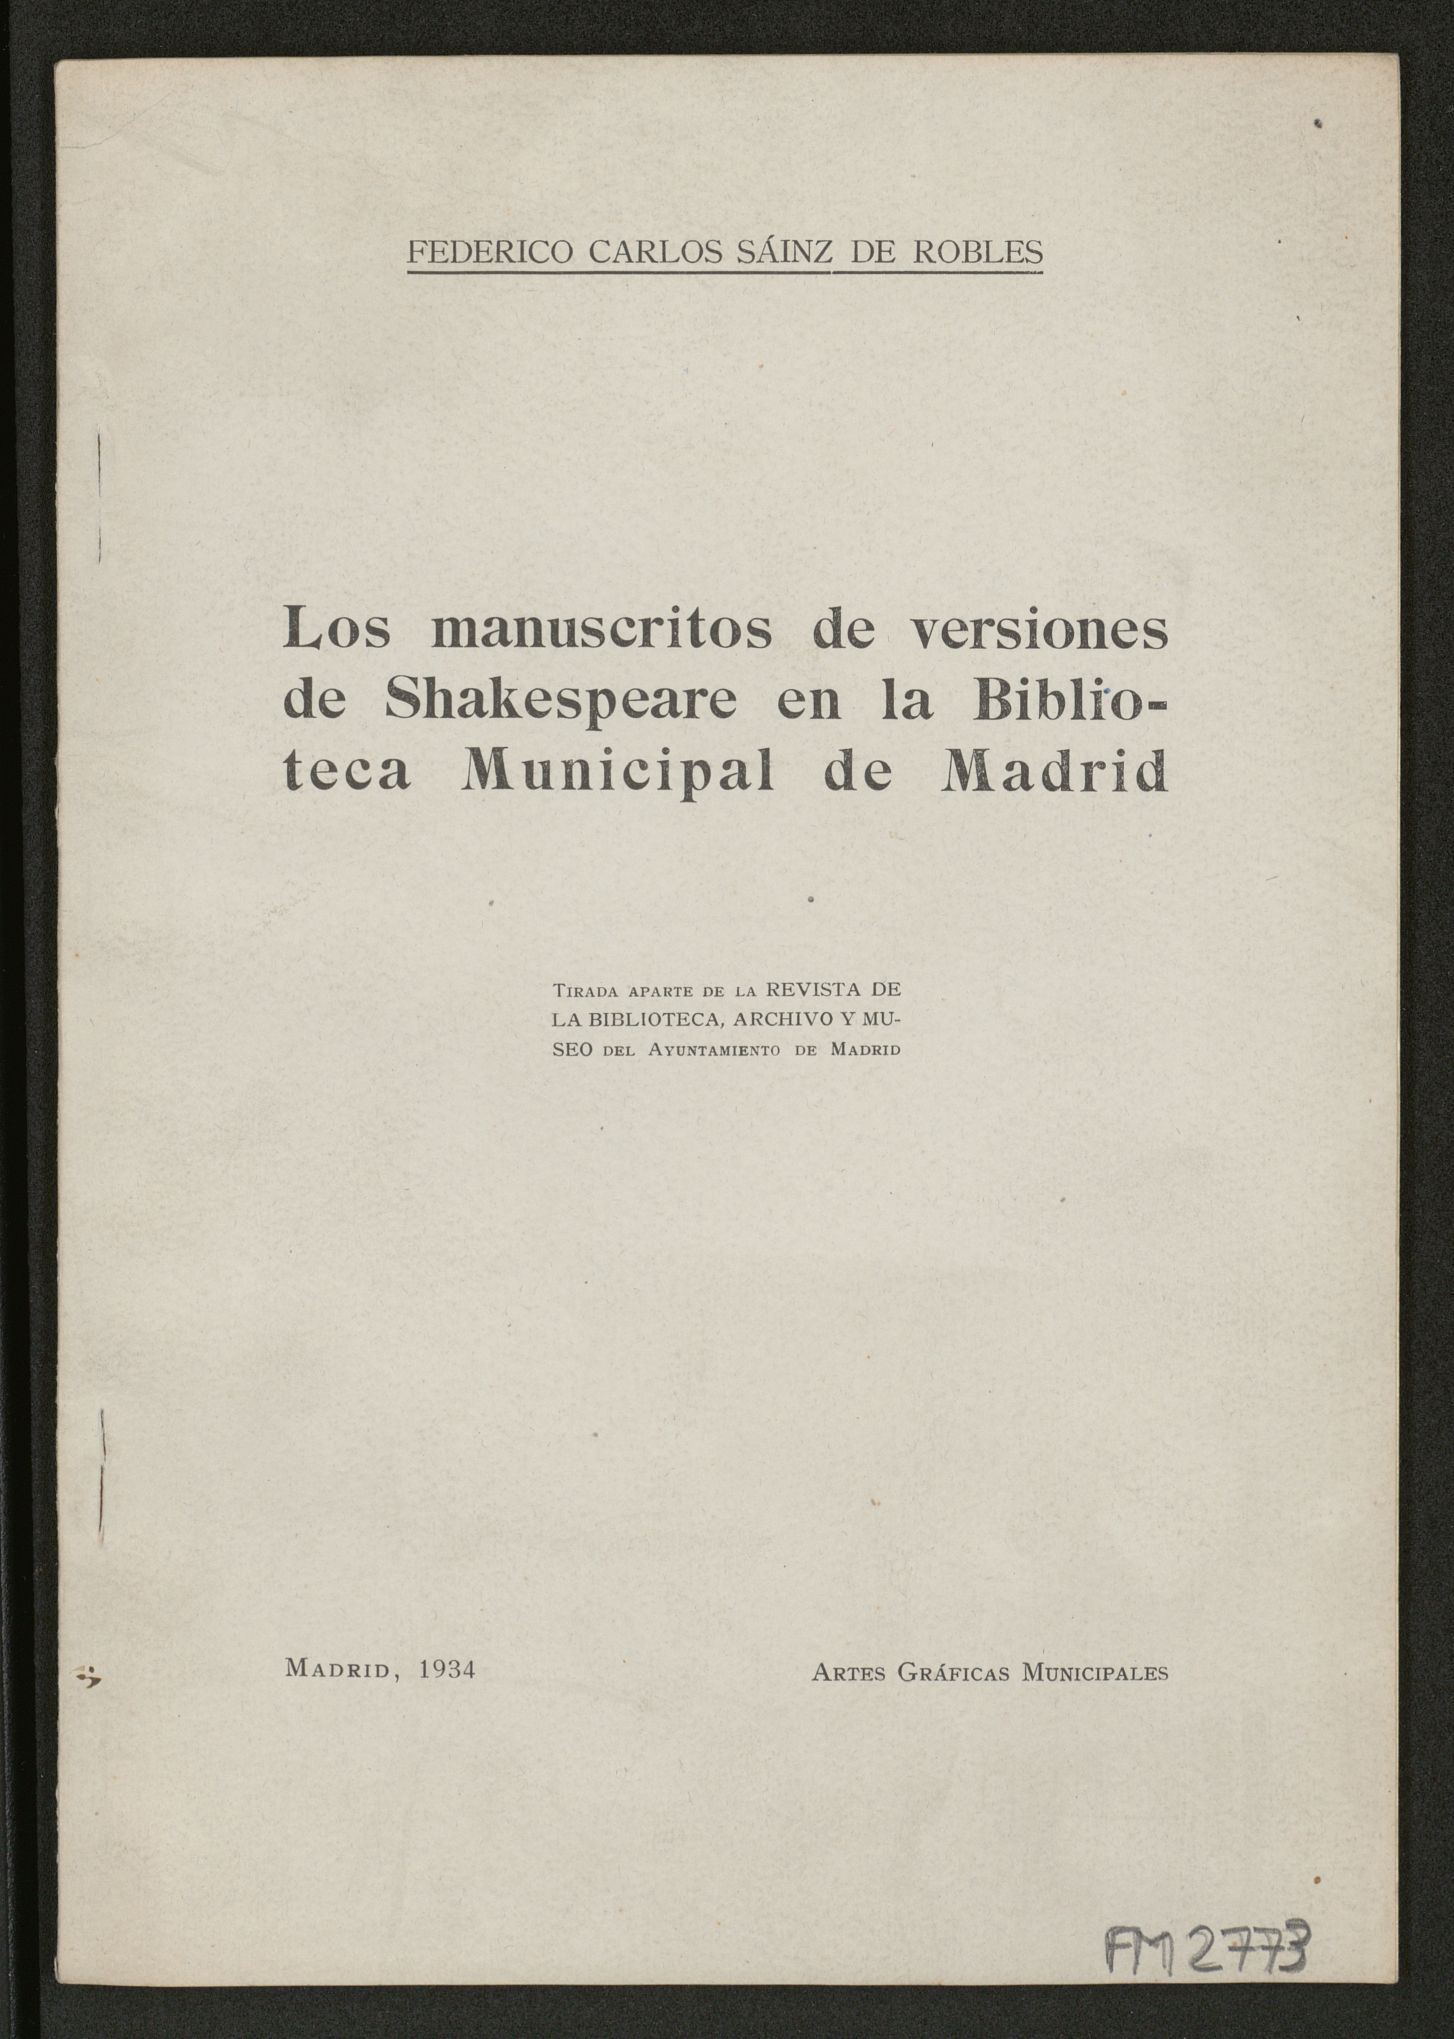 Los manuscritos de versiones de Shakespeare en la Biblioteca municipal de Madrid